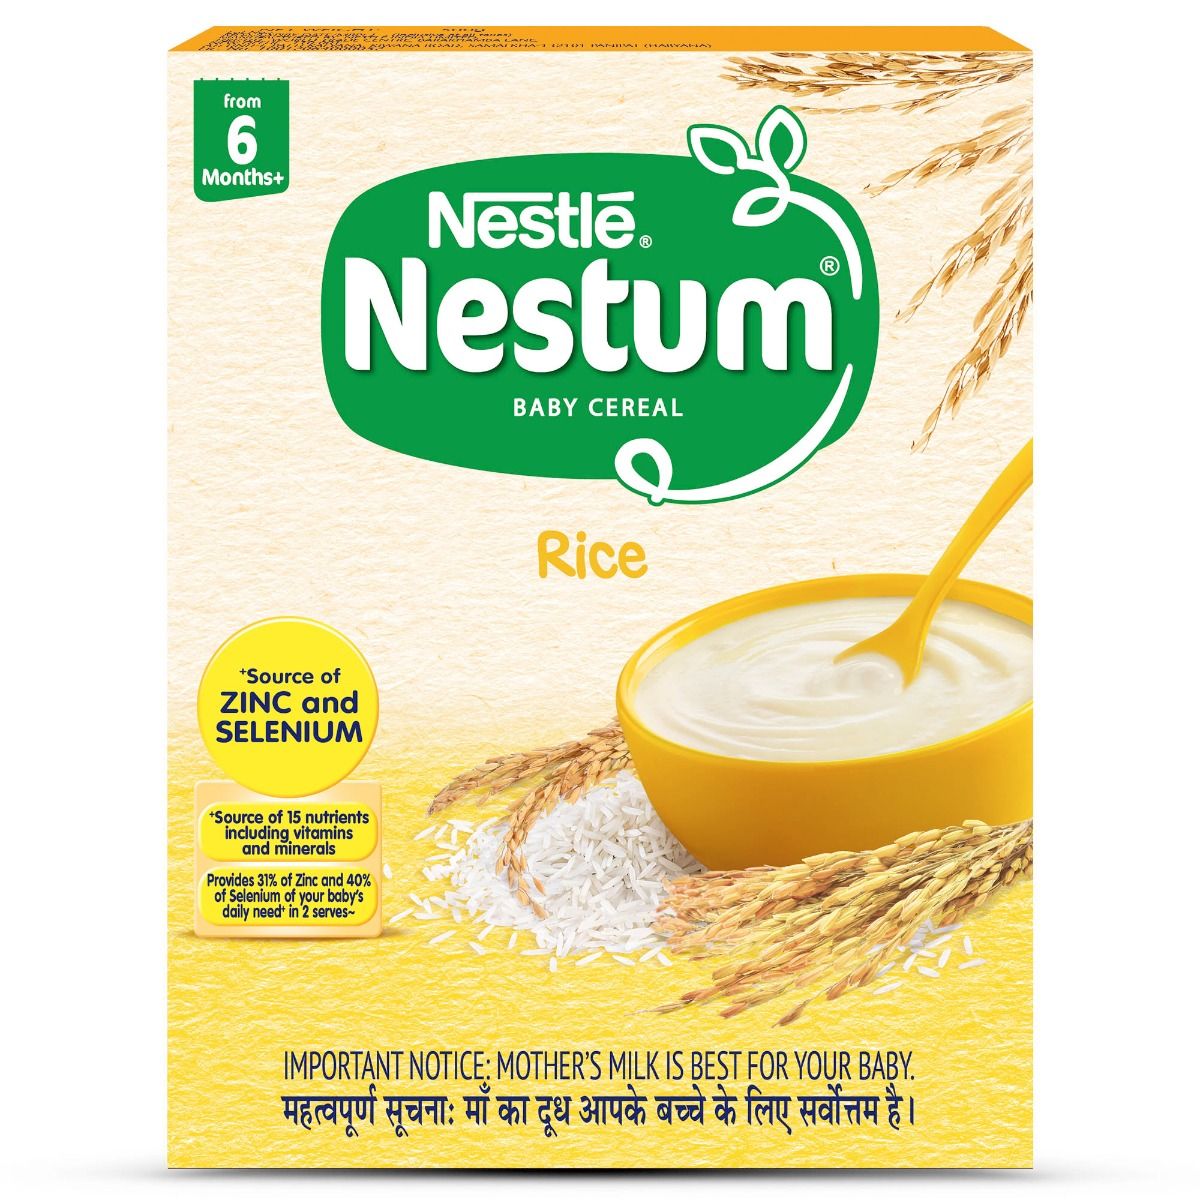 Buy Nestle Nestum Baby Cereal Rice, 6M+, 300 gm Refill Pack Online